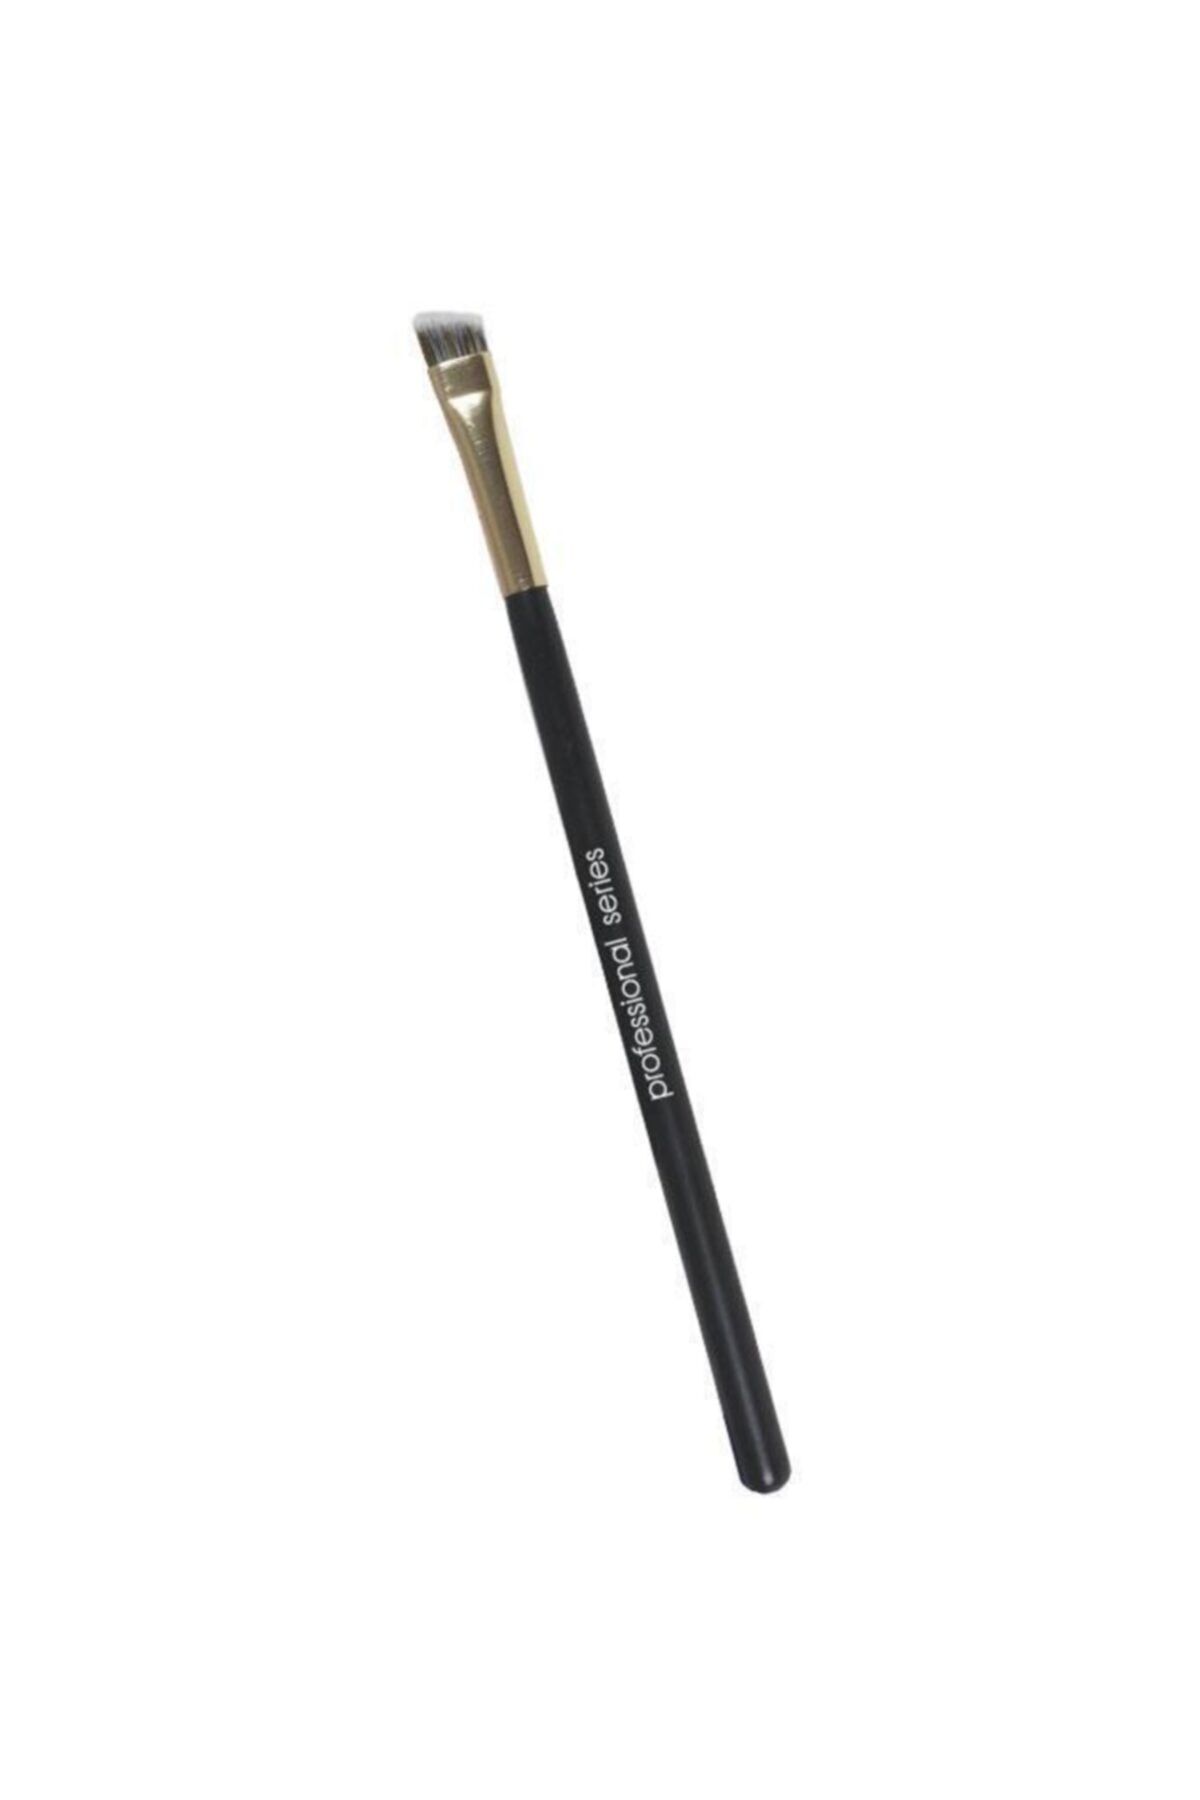 Nascita Professıonal Açılı Eyelıner Fırçası Nasbrush0128